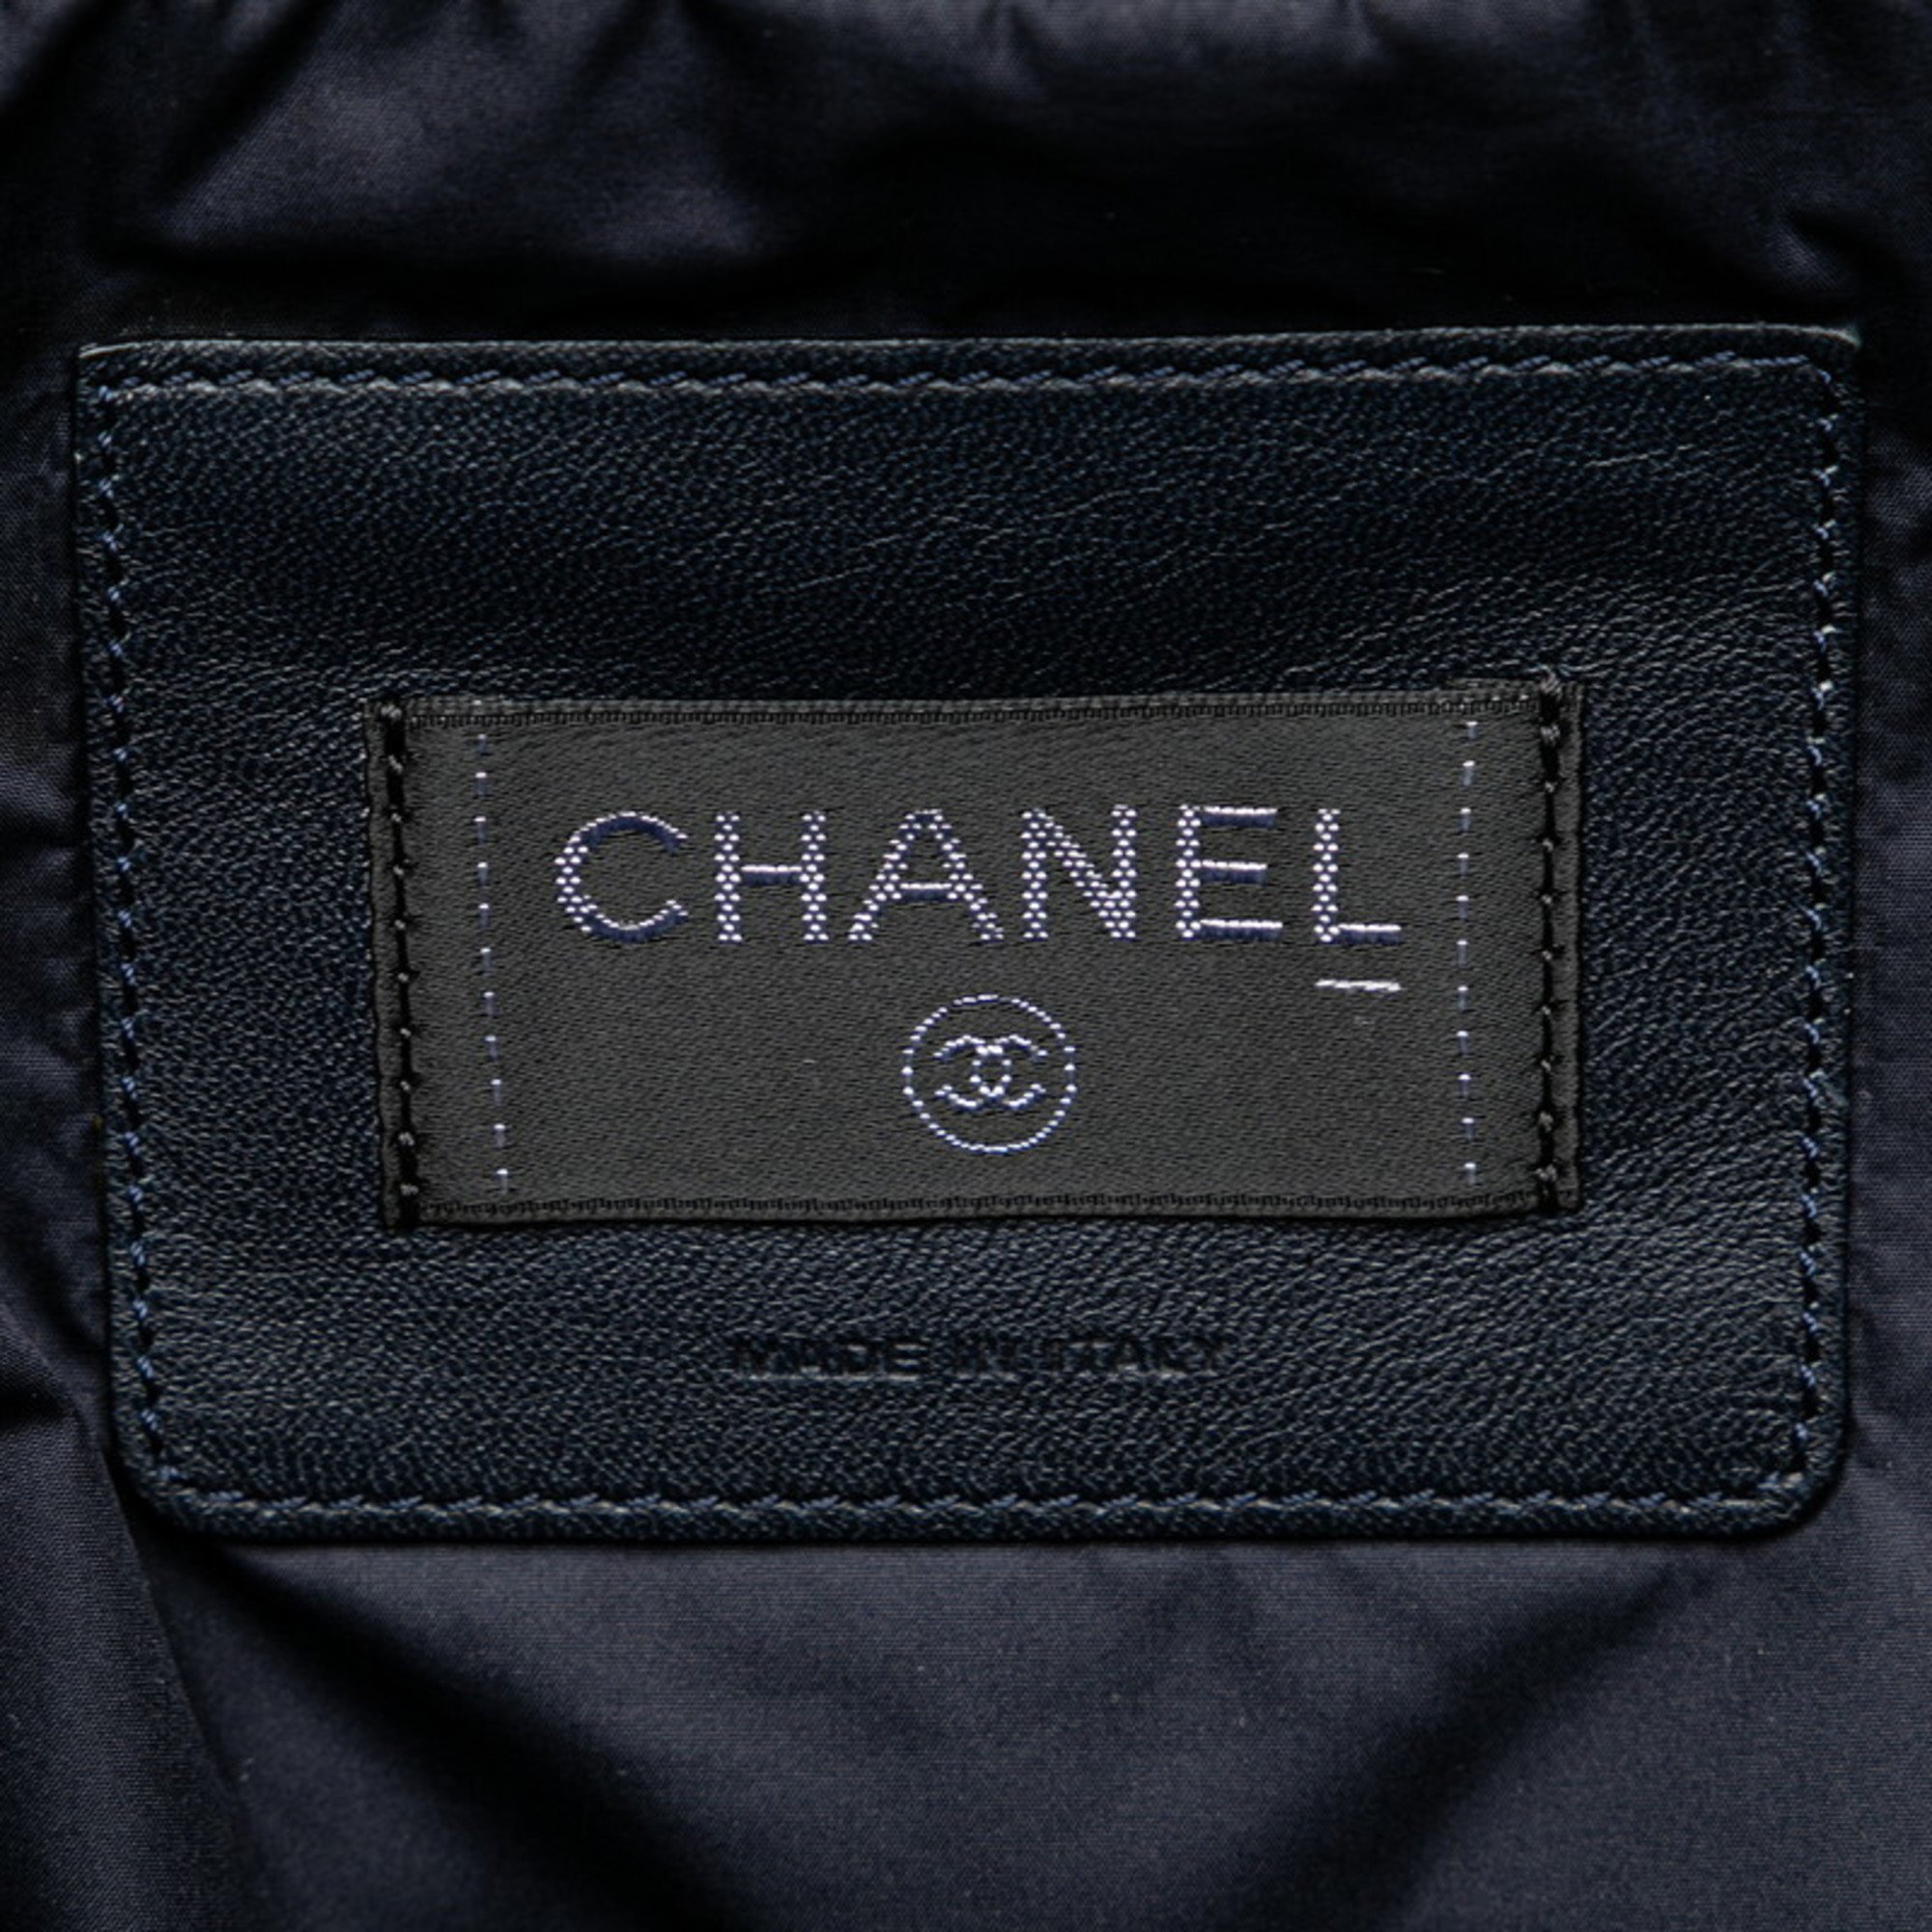 Chanel Coconege Doudoune embossed handbag shoulder bag navy pink nylon wool women's CHANEL